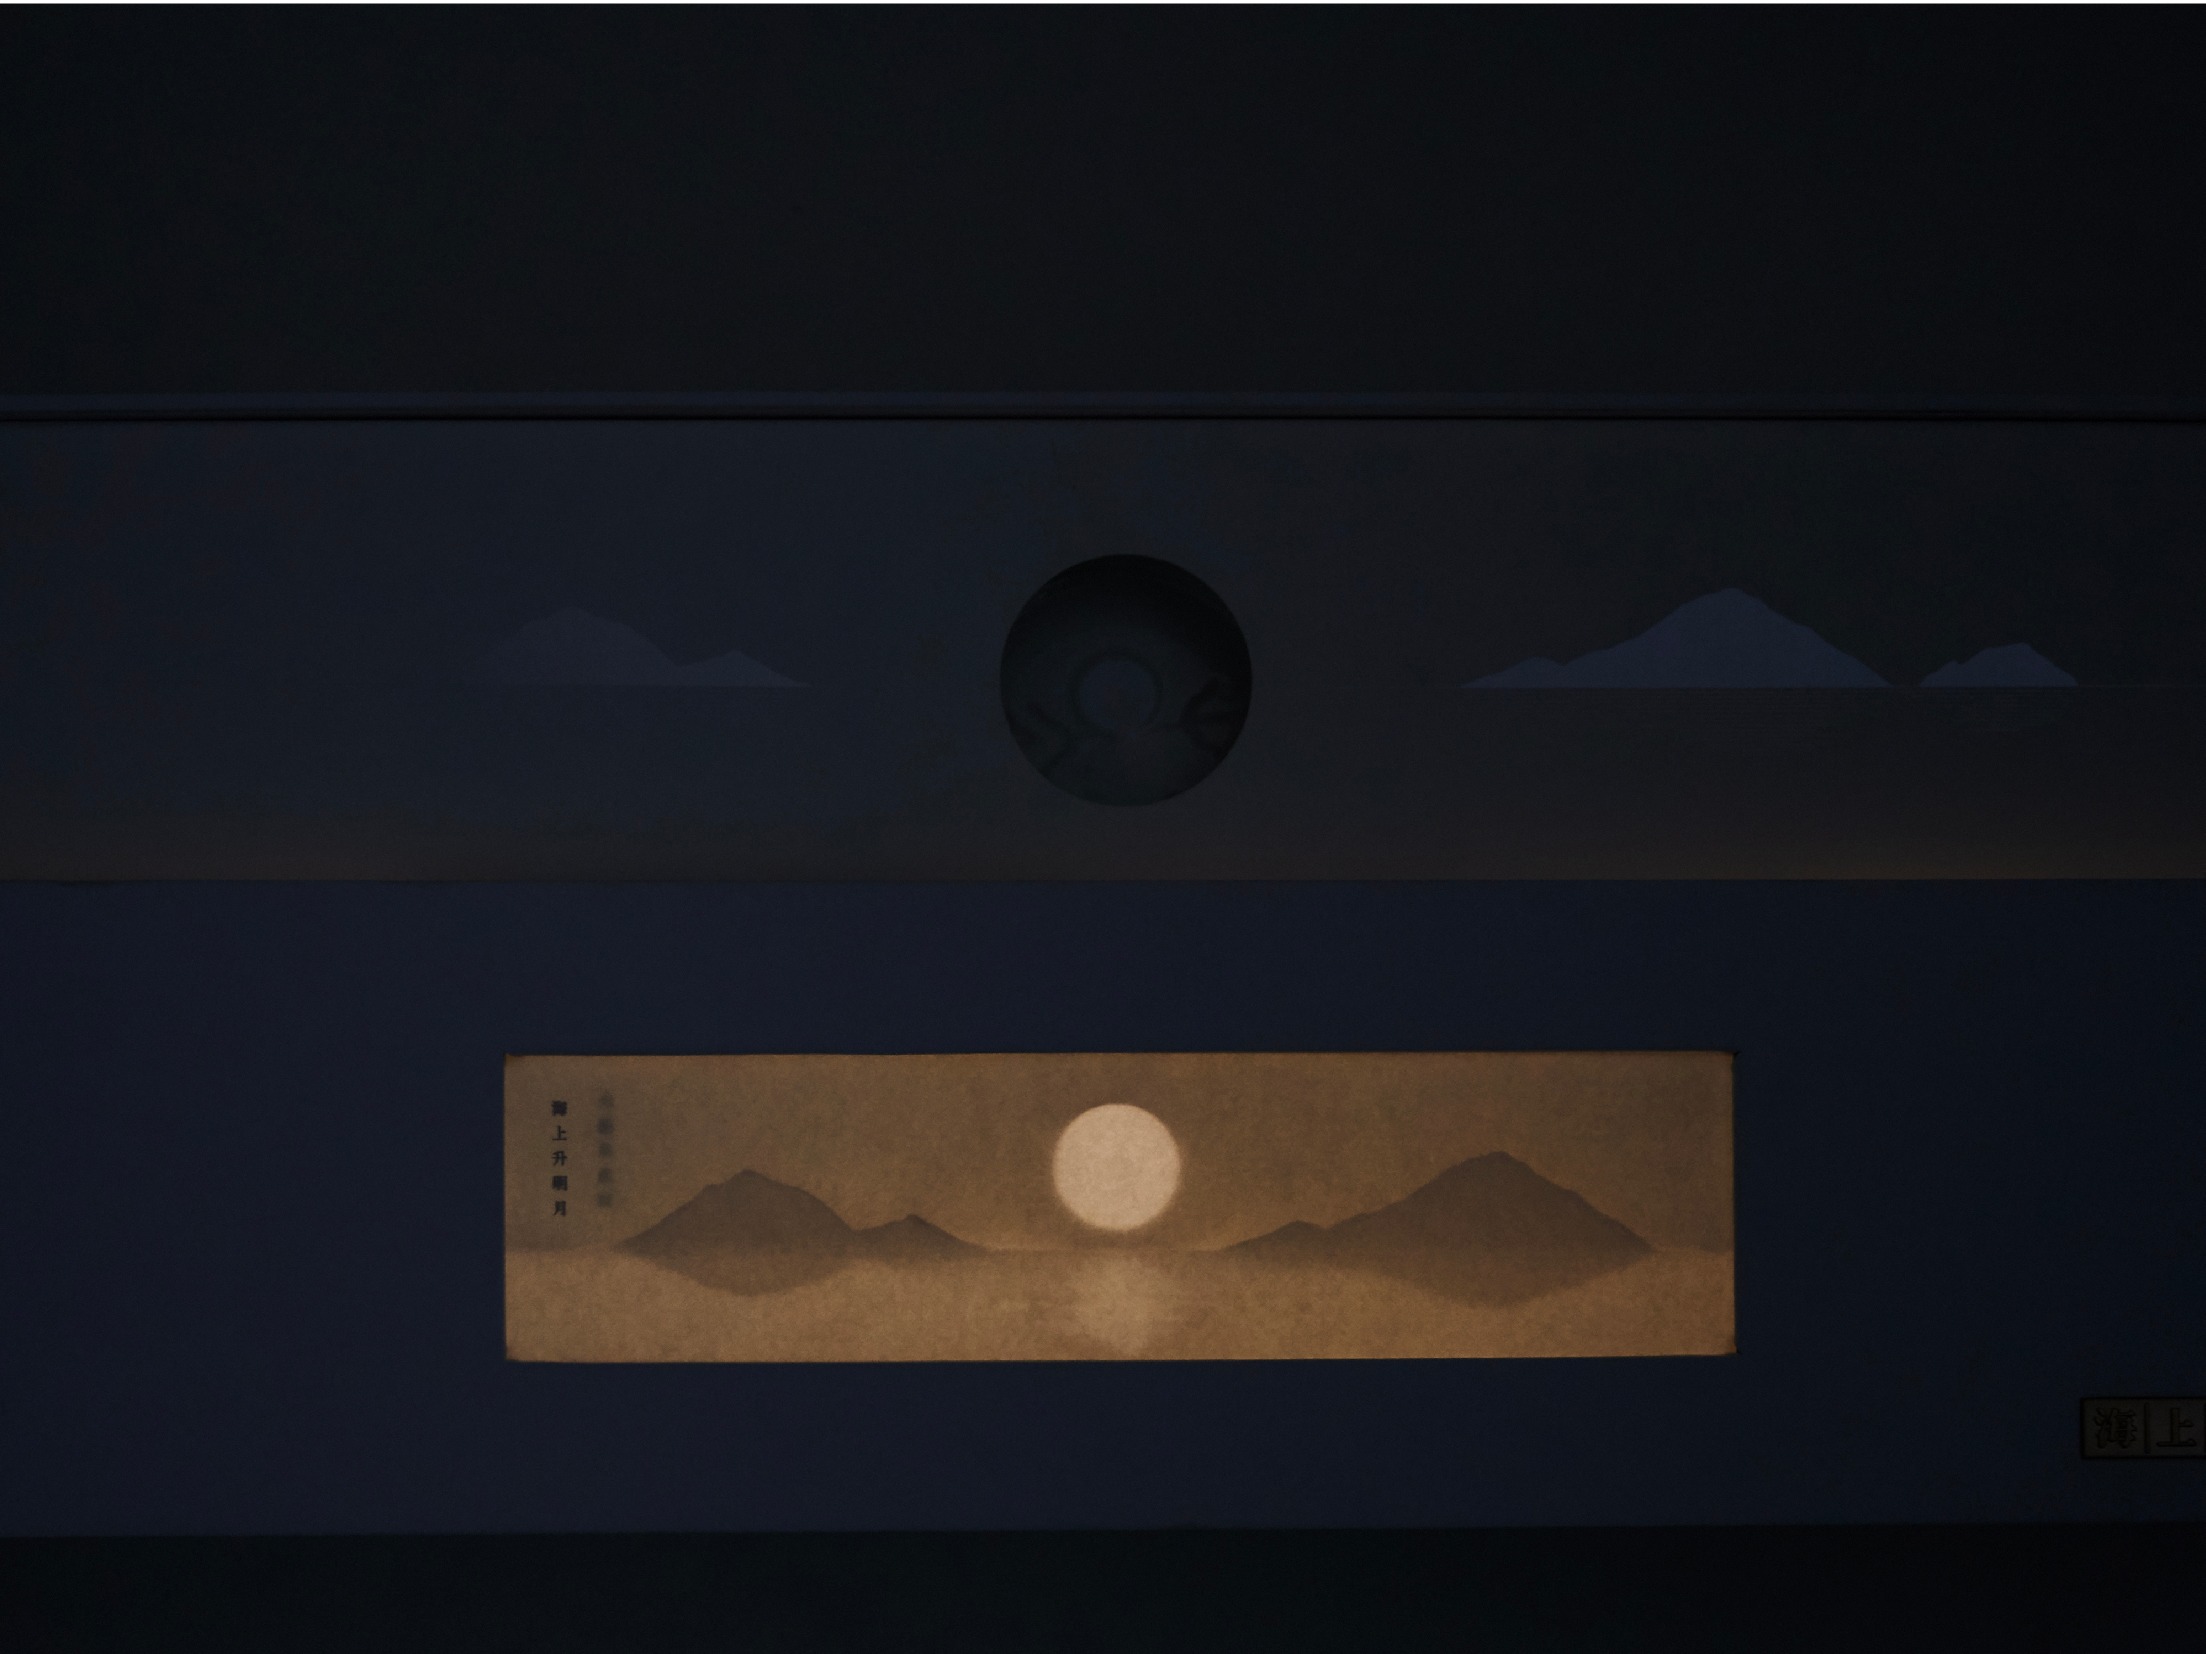 境绎/二〇二〇 「海上升明月」月饼包装设计